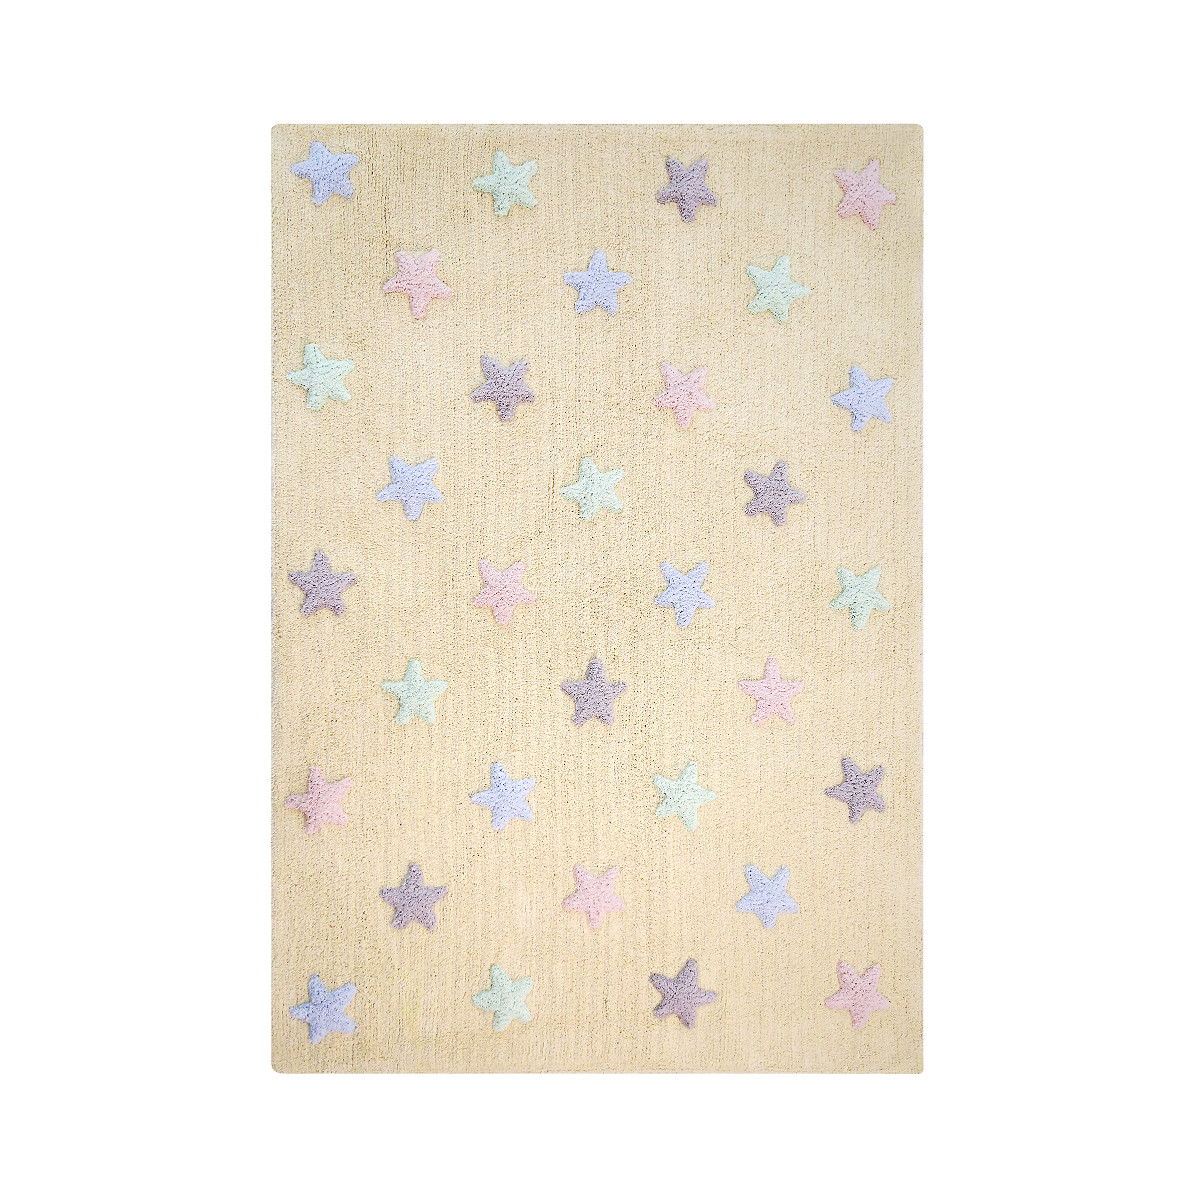 Přírodní koberec, ručně tkaný Tricolor Stars Vanilla